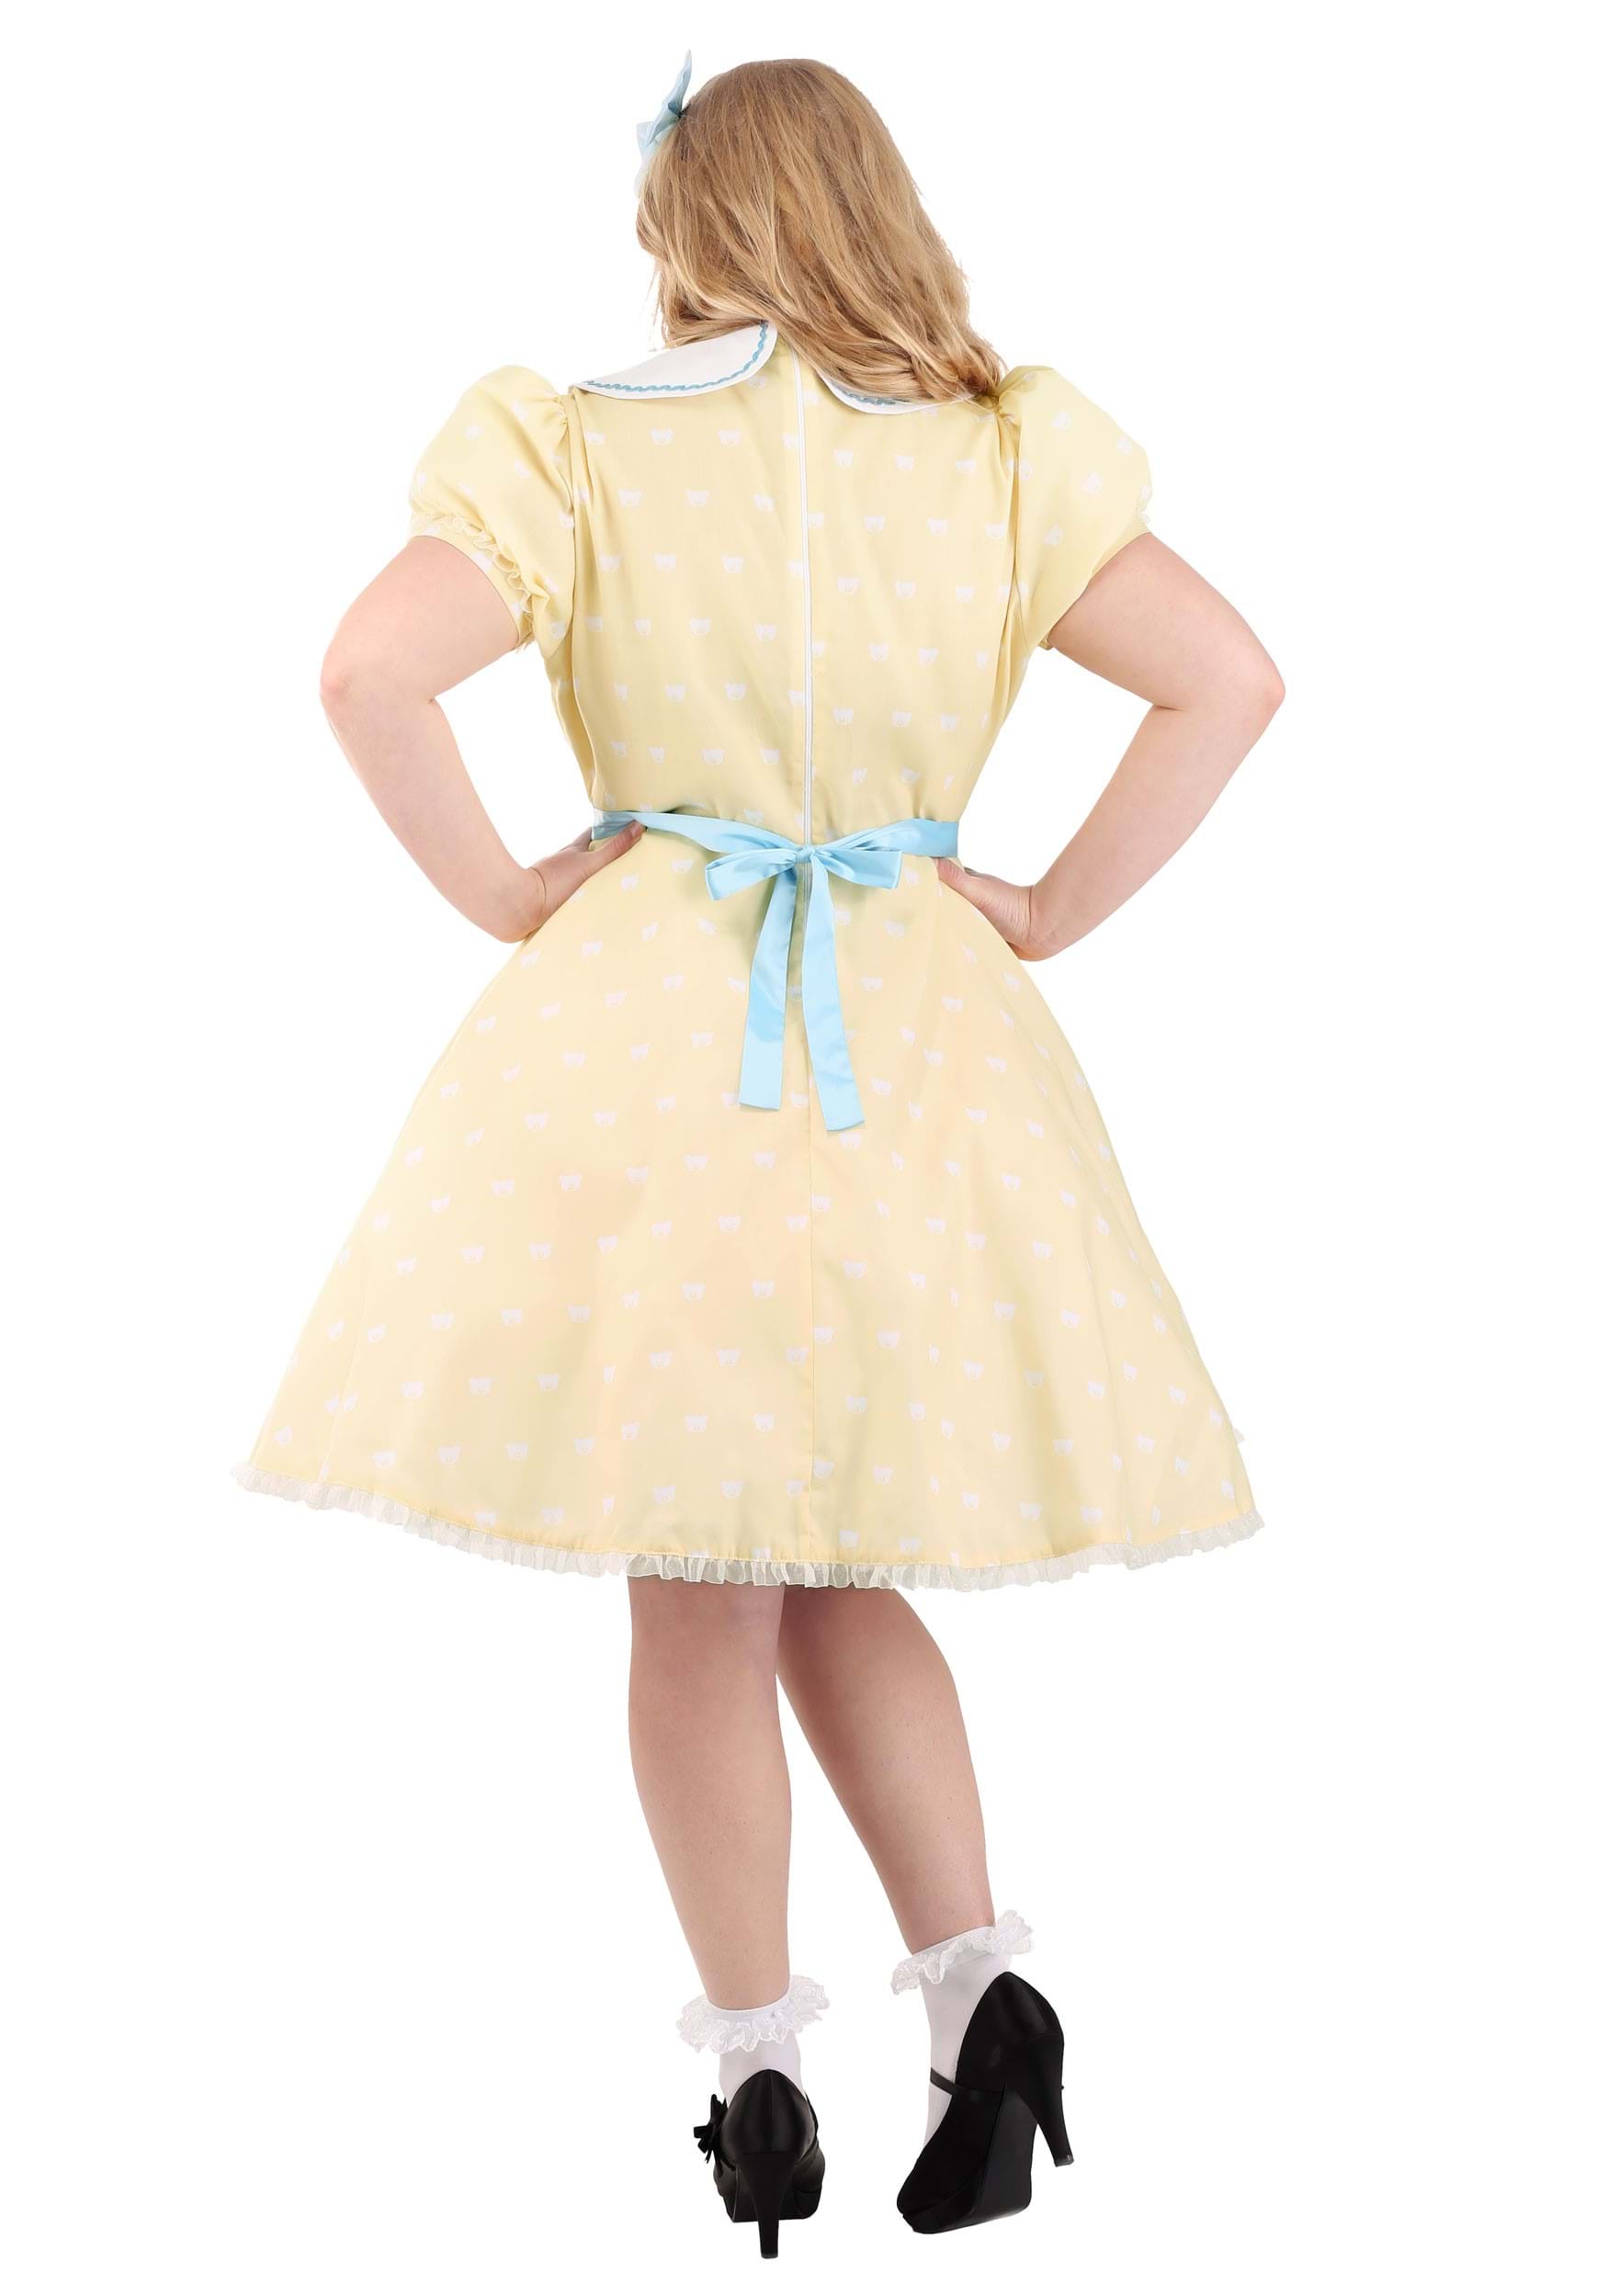 Plus Size Women's Goldilocks Fancy Dress Costume